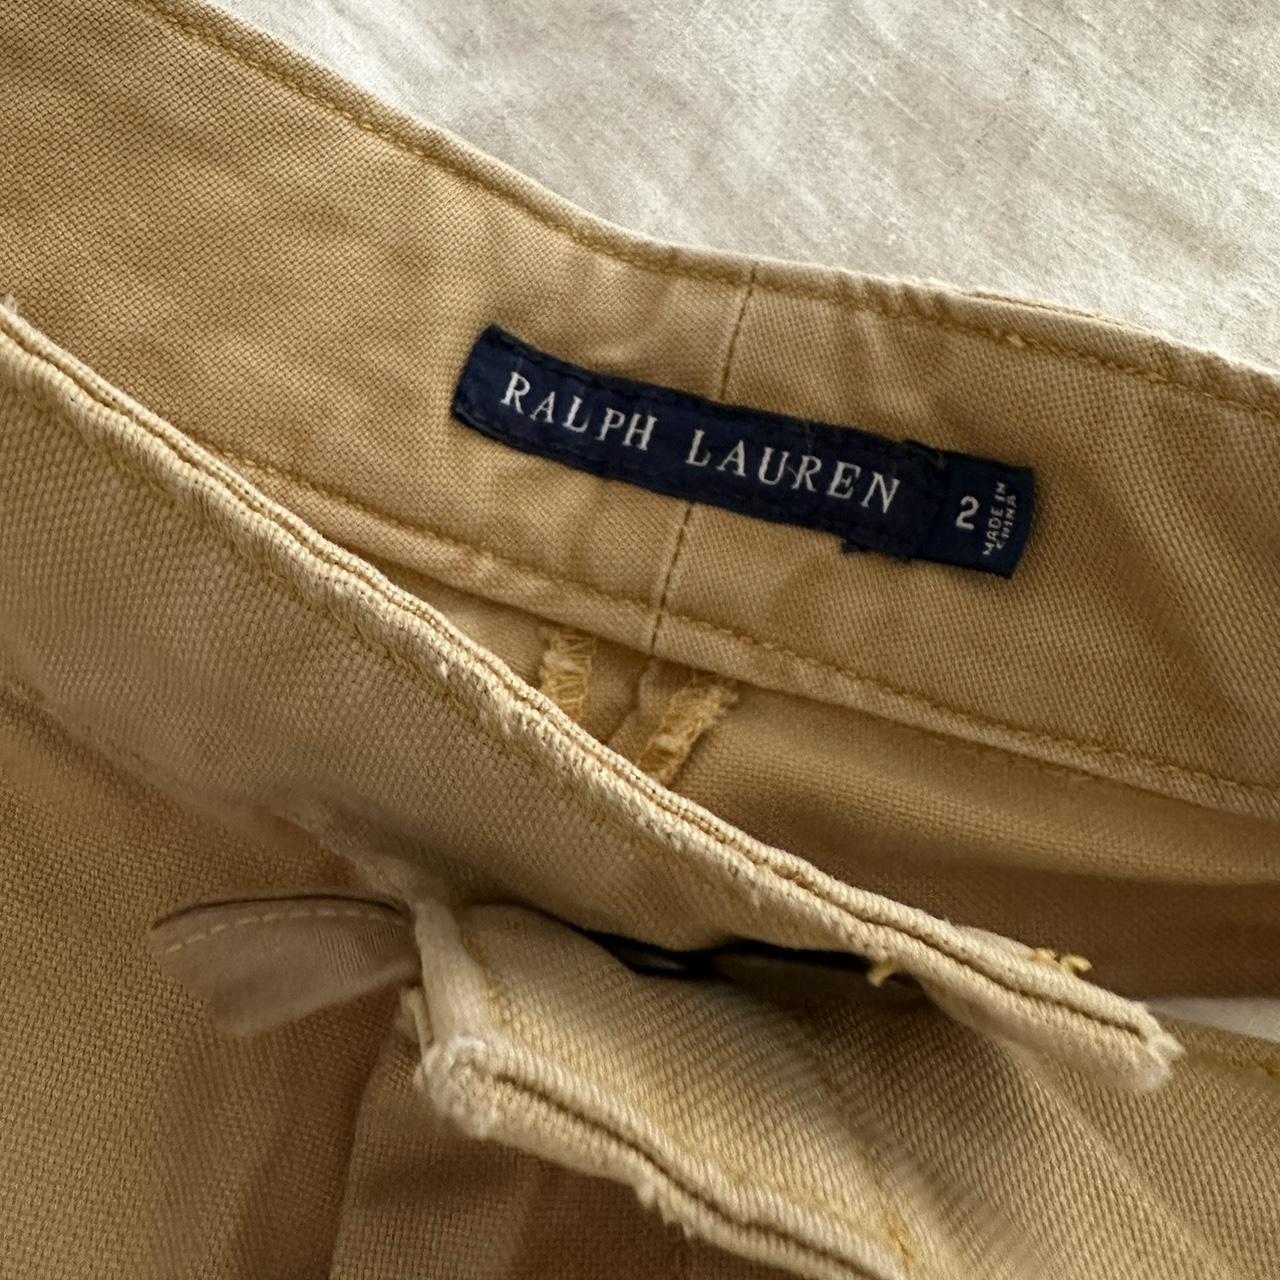 Ralph Lauren mustard shorts. Very well made.... - Depop